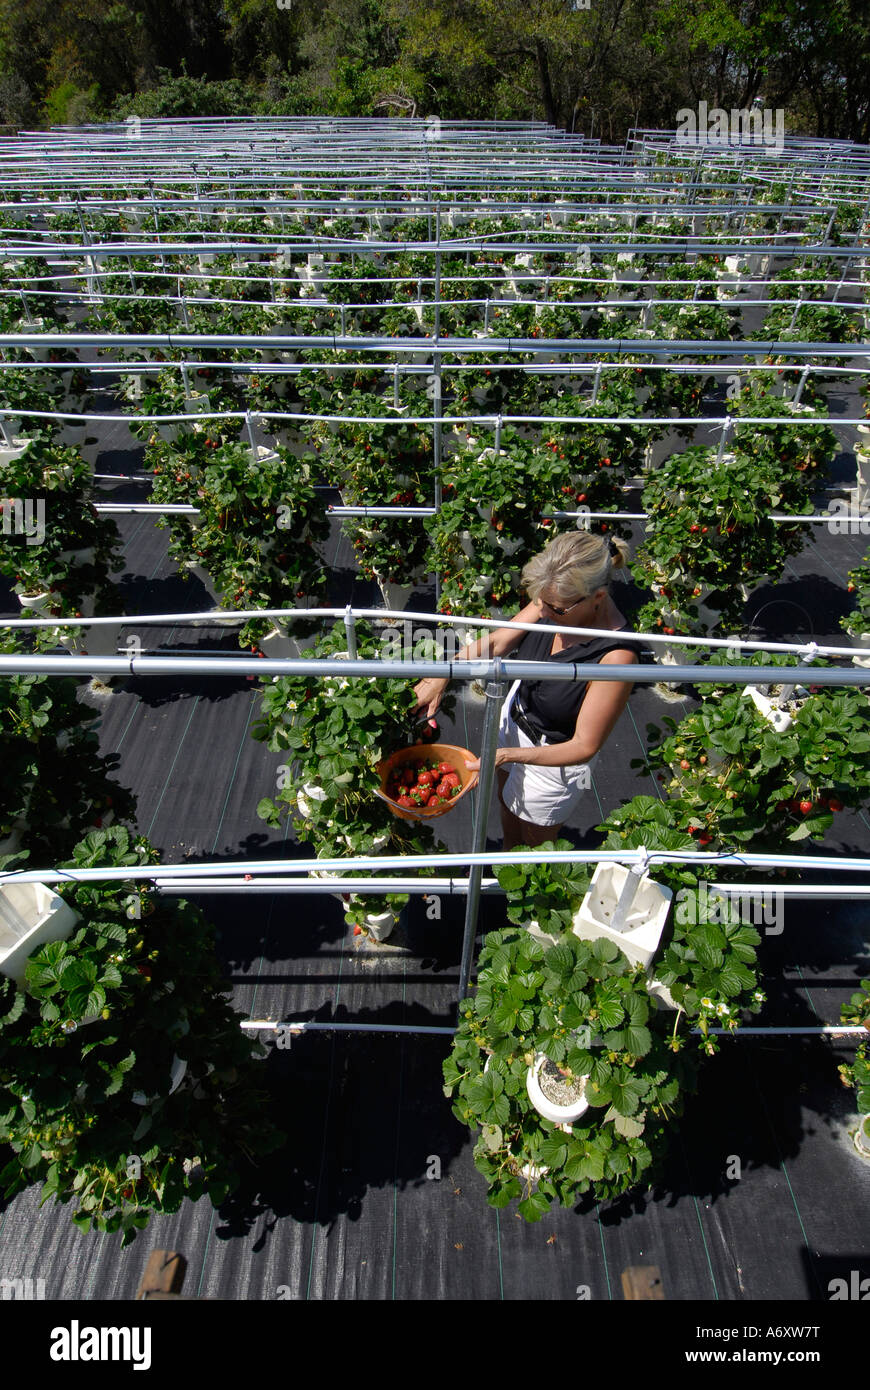 Hidroponía cultivo de fresas en Ruskin del Condado de Hillsborough Tampa Florida Central oeste del golfo Foto de stock